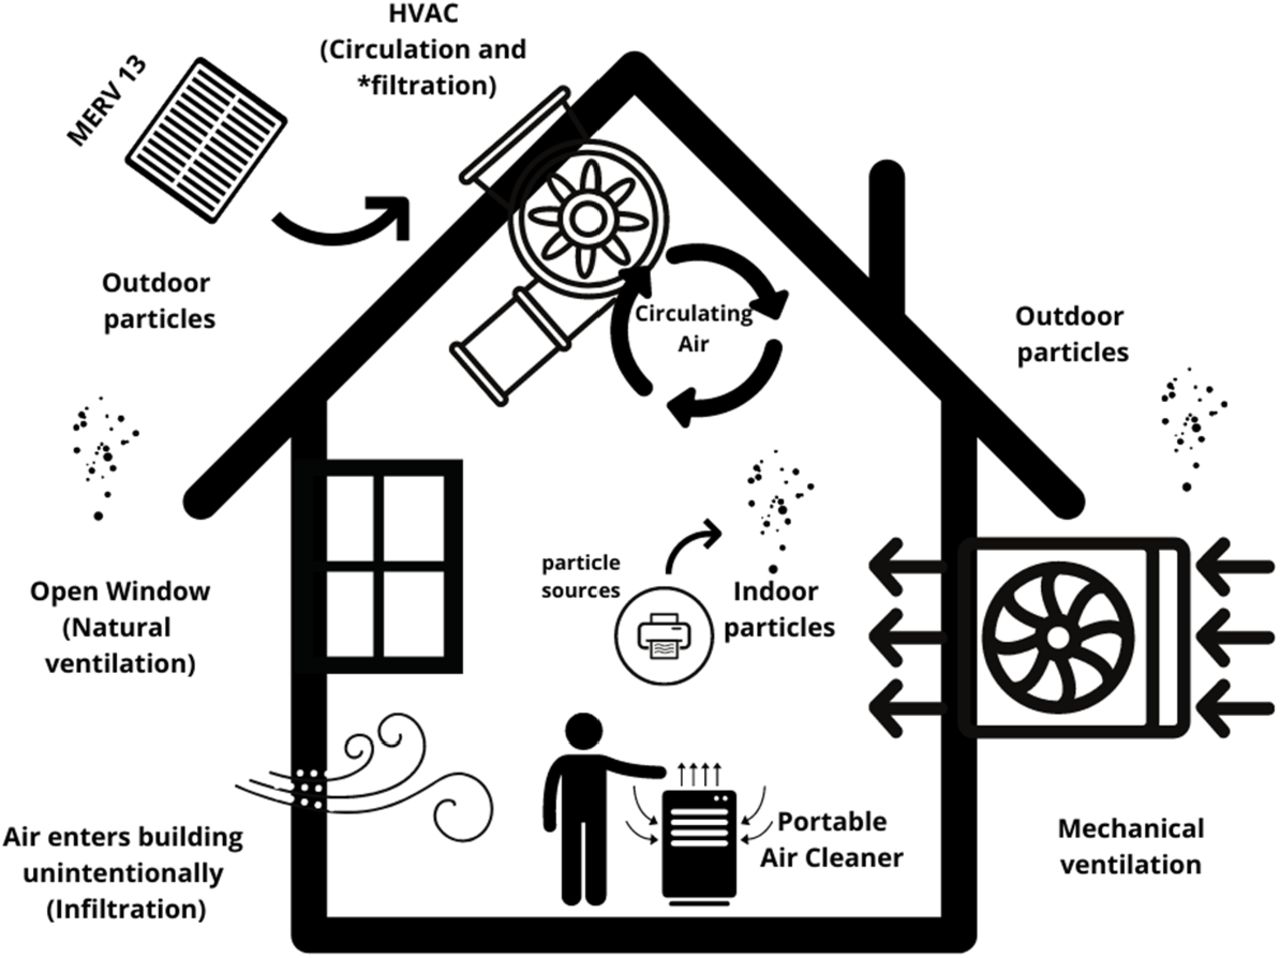 Qualité air intérieur - Pollution air intérieur - Mesure & Purification